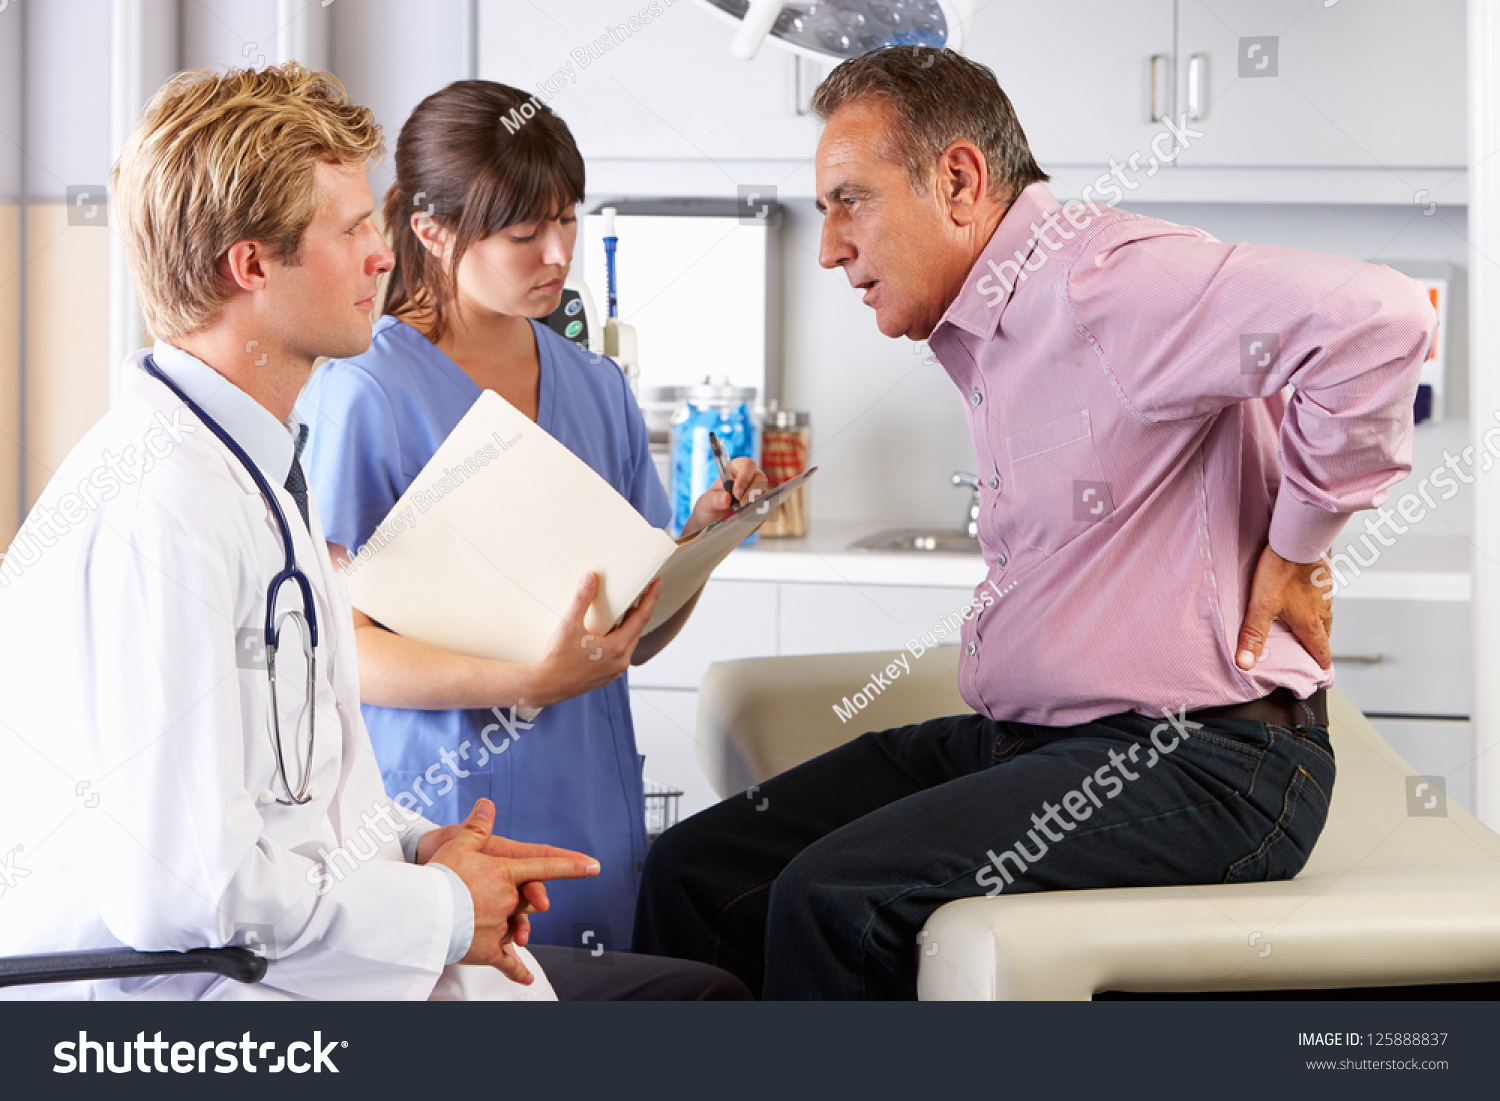 男性病人拜访医生的办公室腰疼-医疗保健,人物